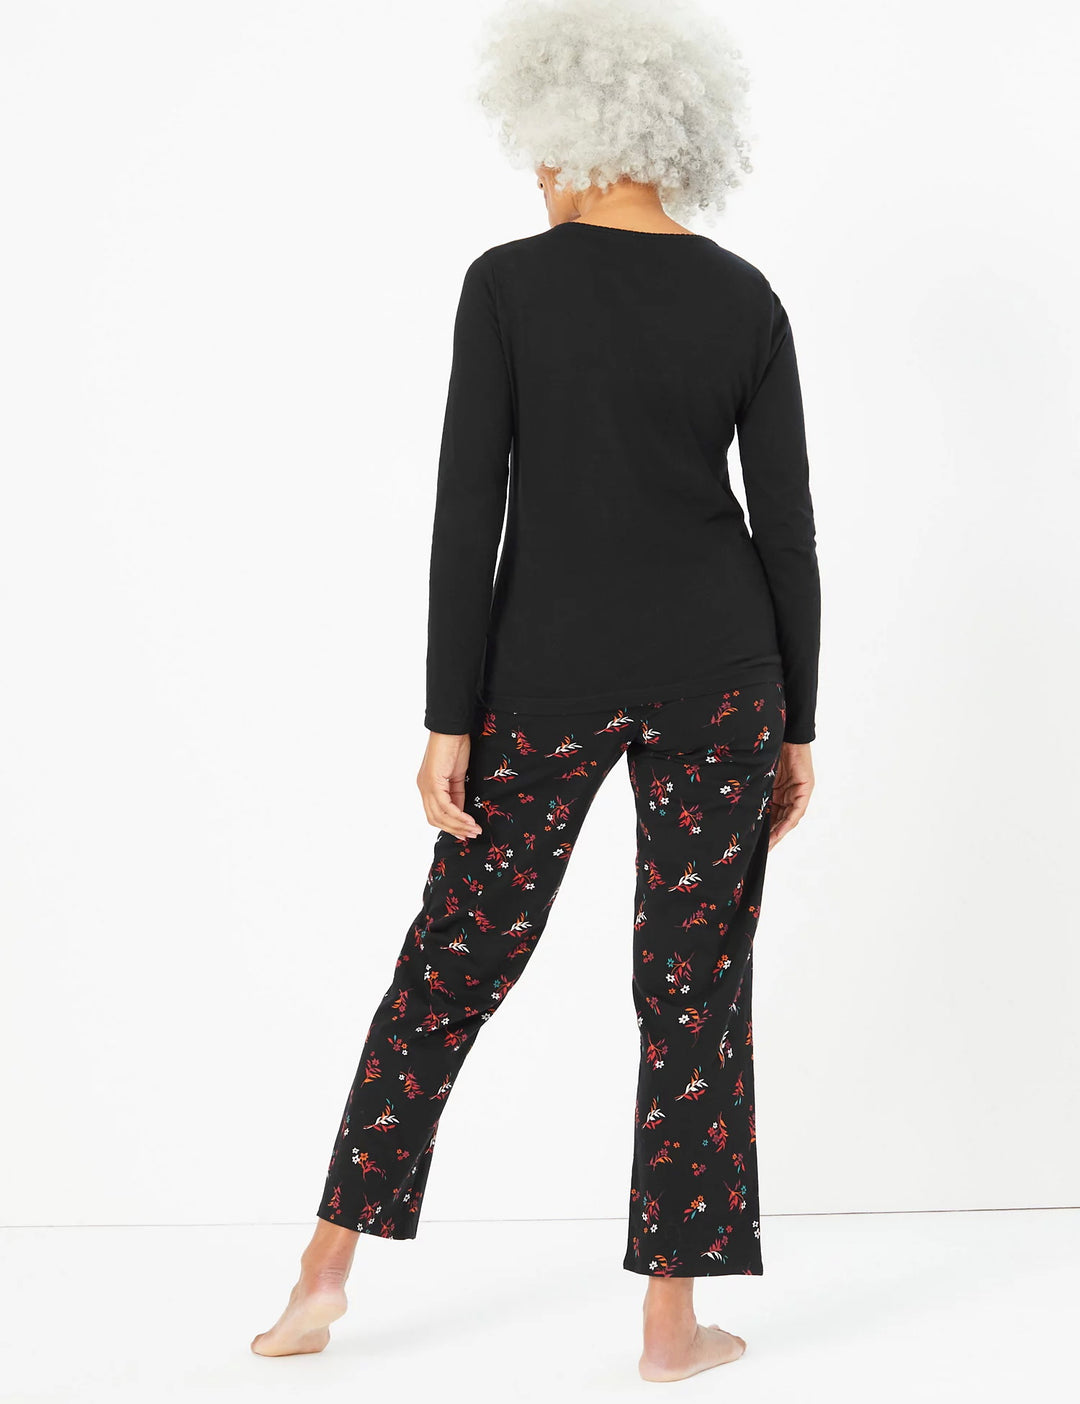 M&S Ladies Pajama Suit T37/4385F